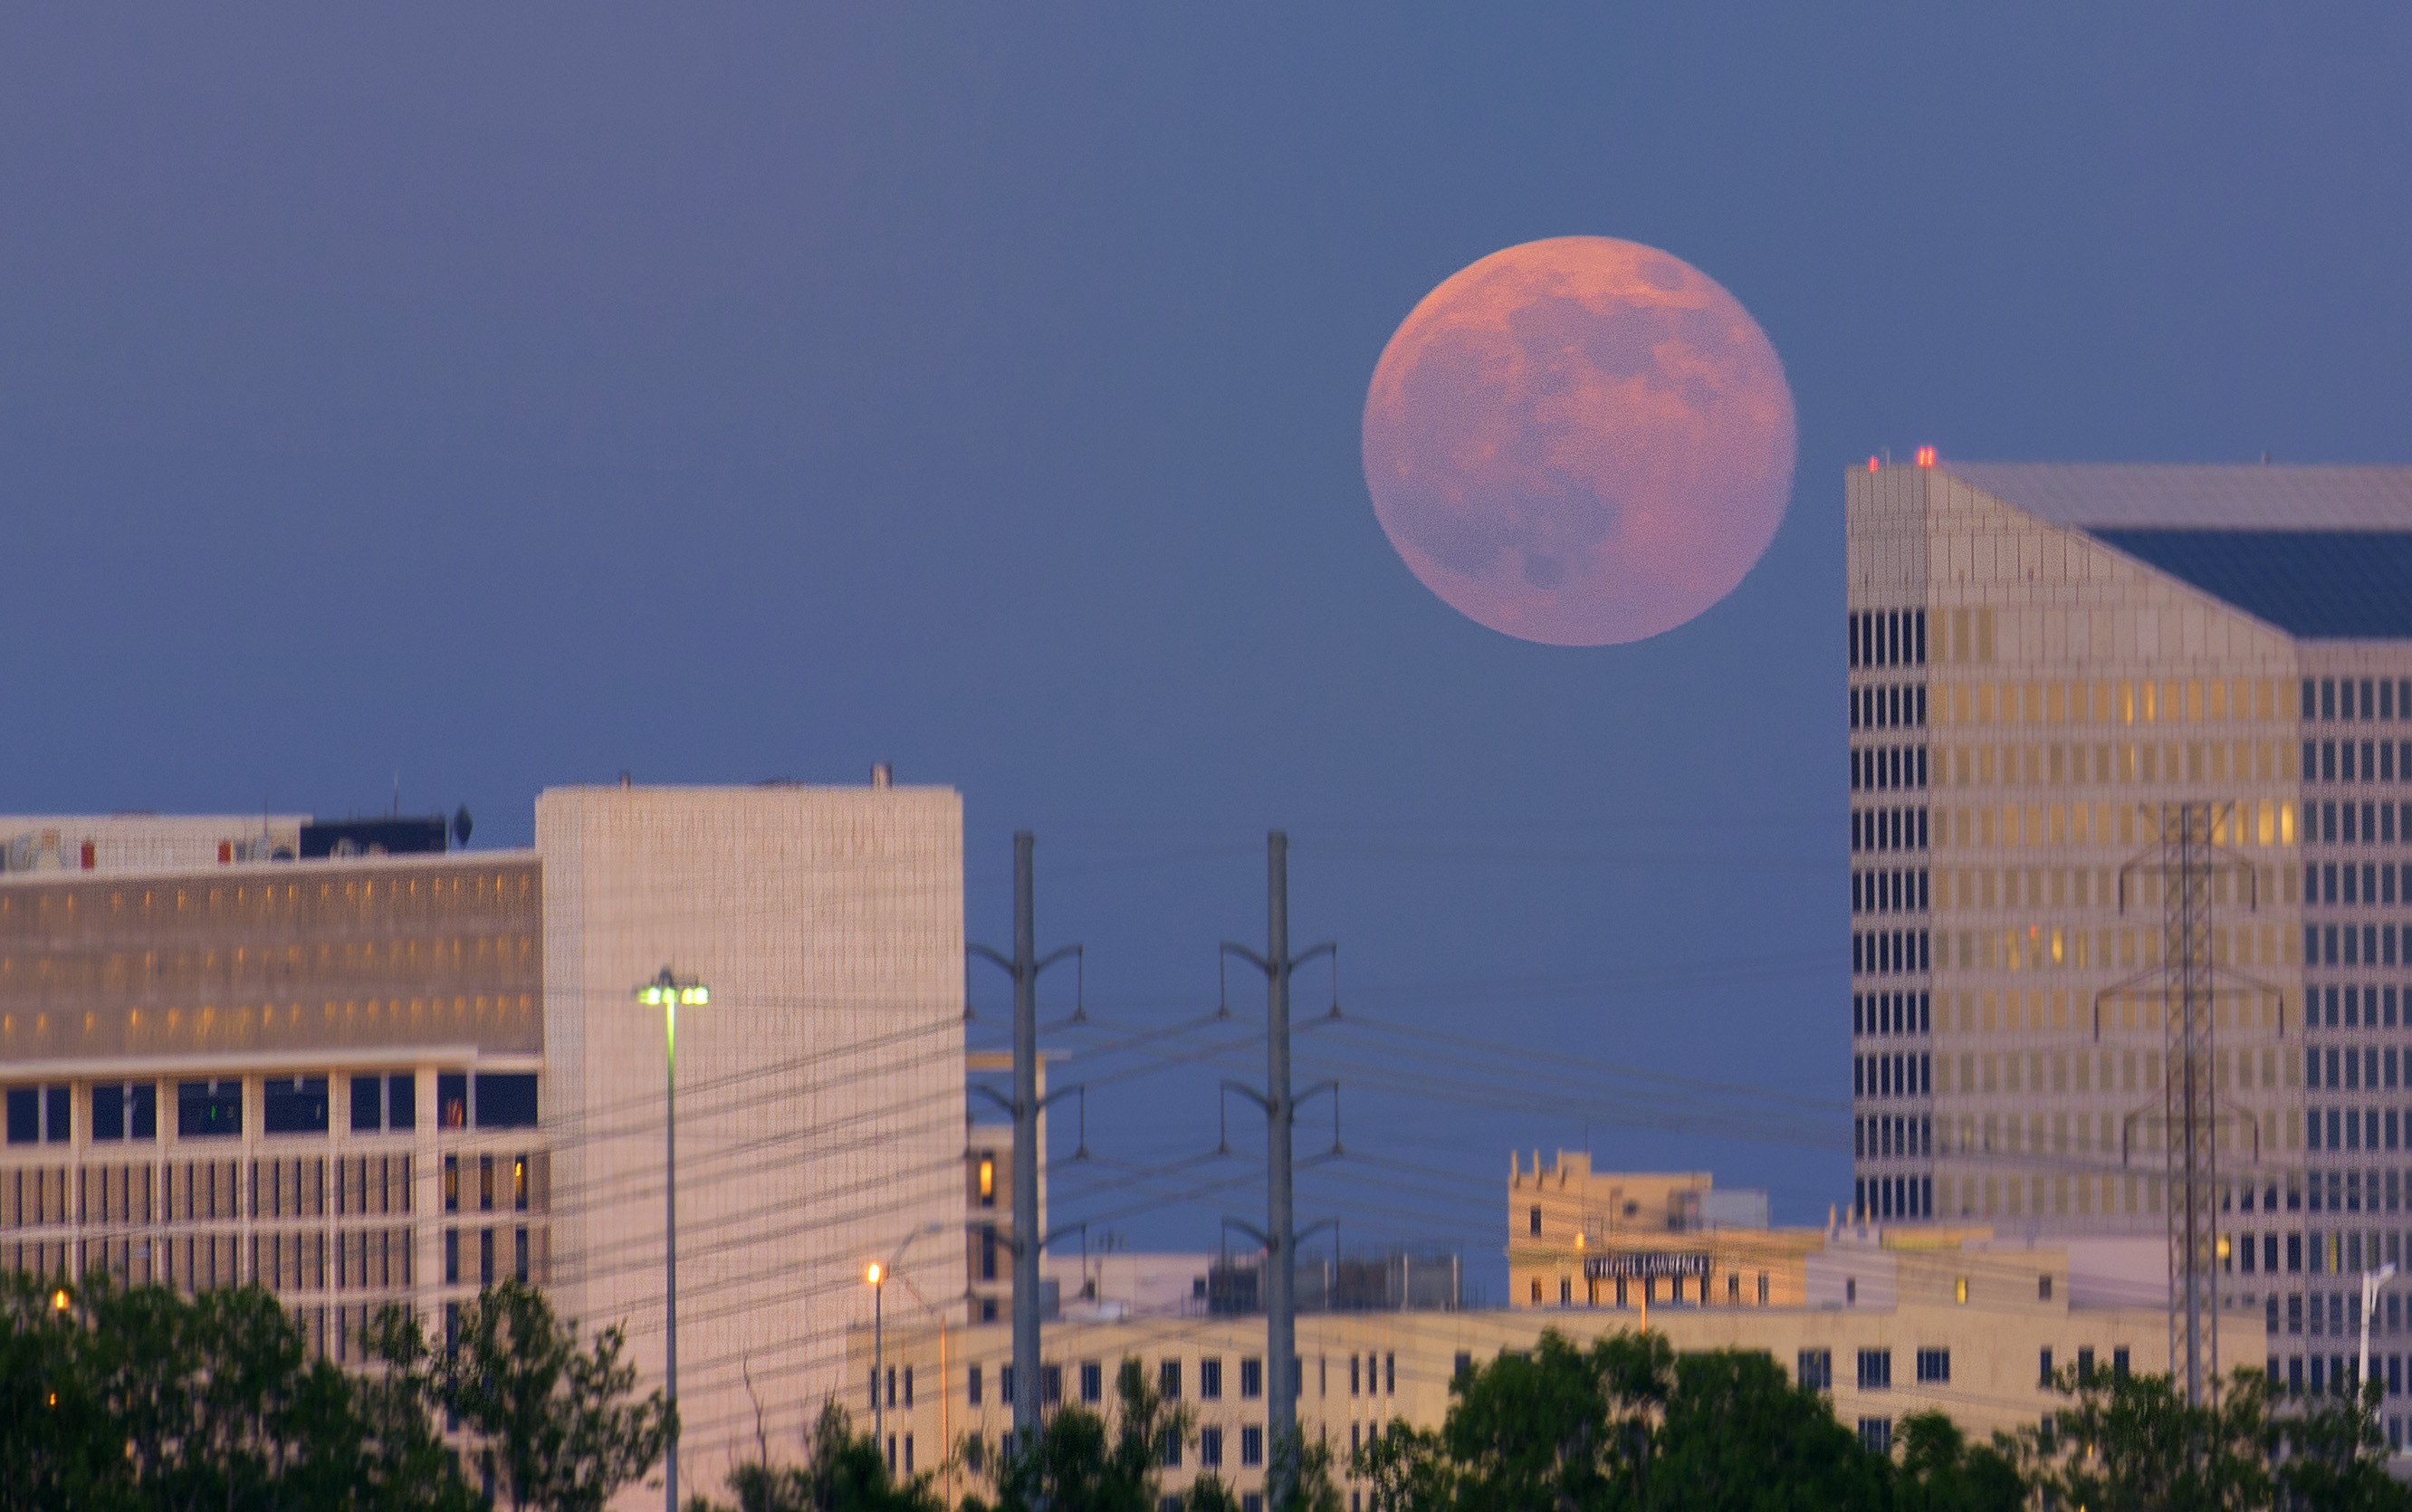 Lua poderá ser vista em tamanho ampliado por volta das 18h, perto da linha do horizonte (Foto: Joe/flickr/creative commons)